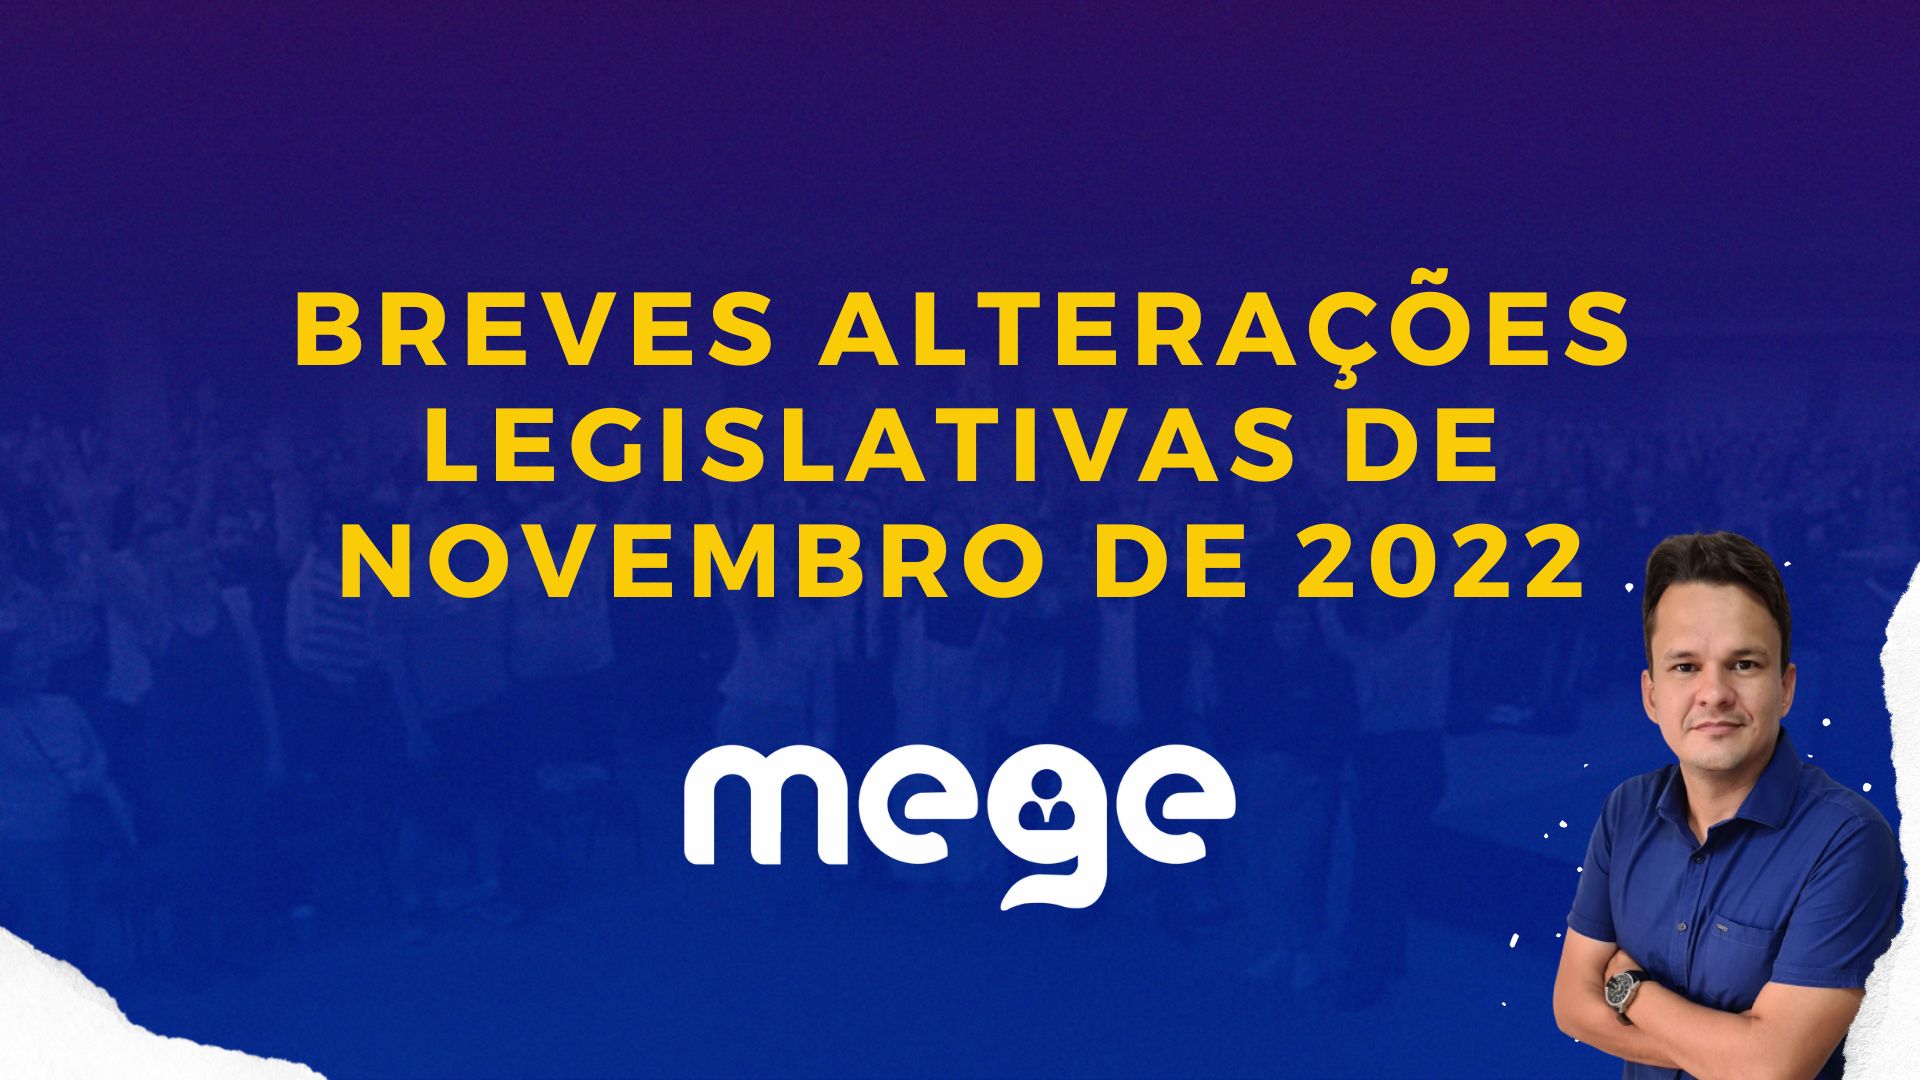 Breves alterações legislativas de novembro de 2022